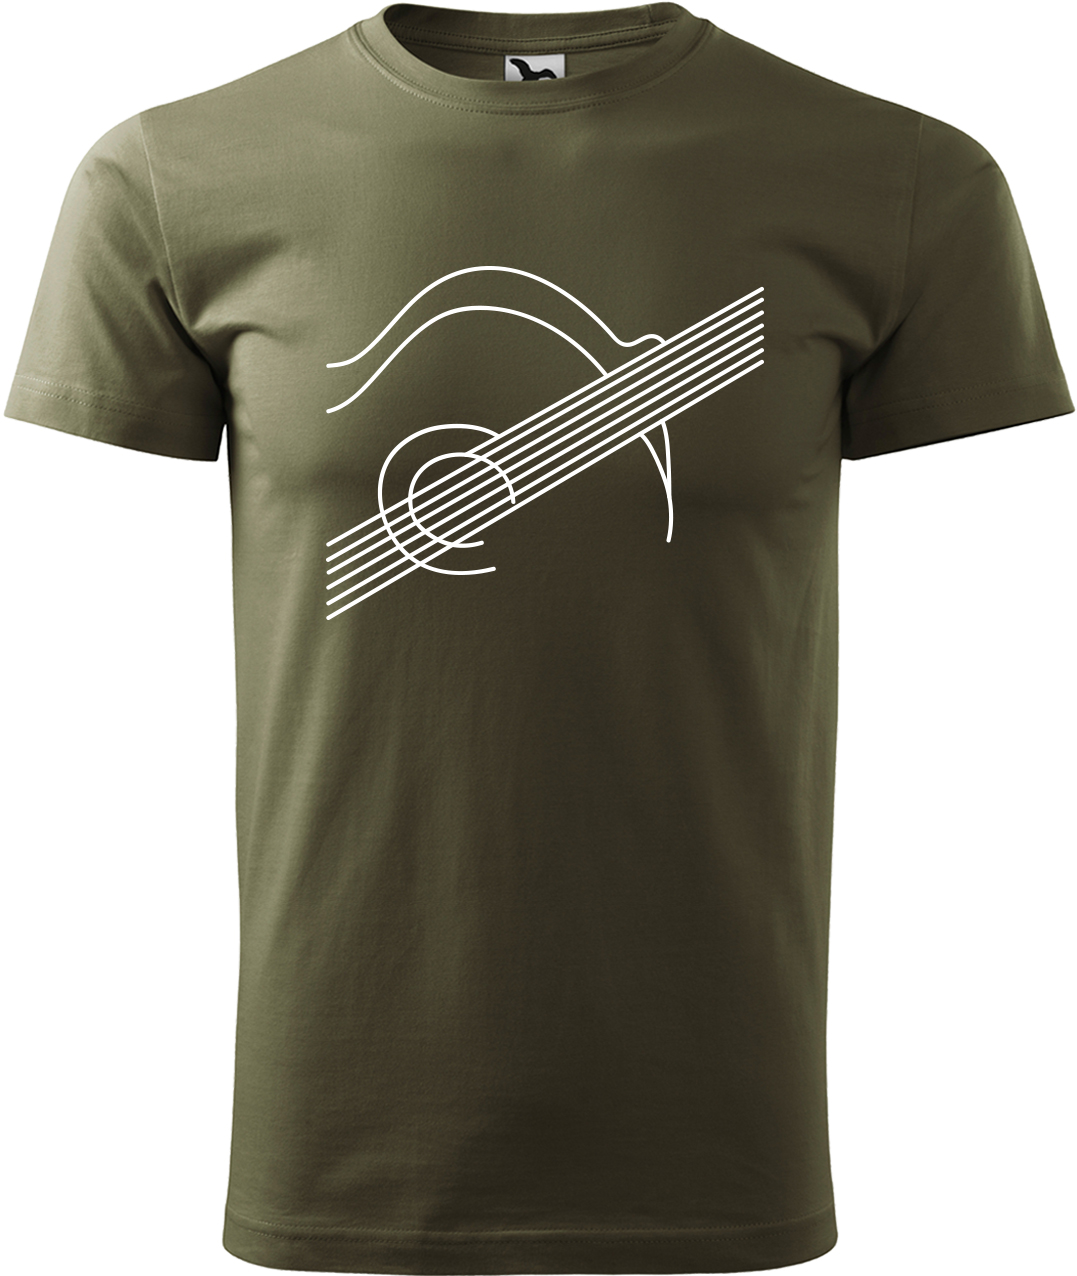 Pánské tričko s kytarou - Kytara na těle Velikost: S, Barva: Military (69), Střih: pánský